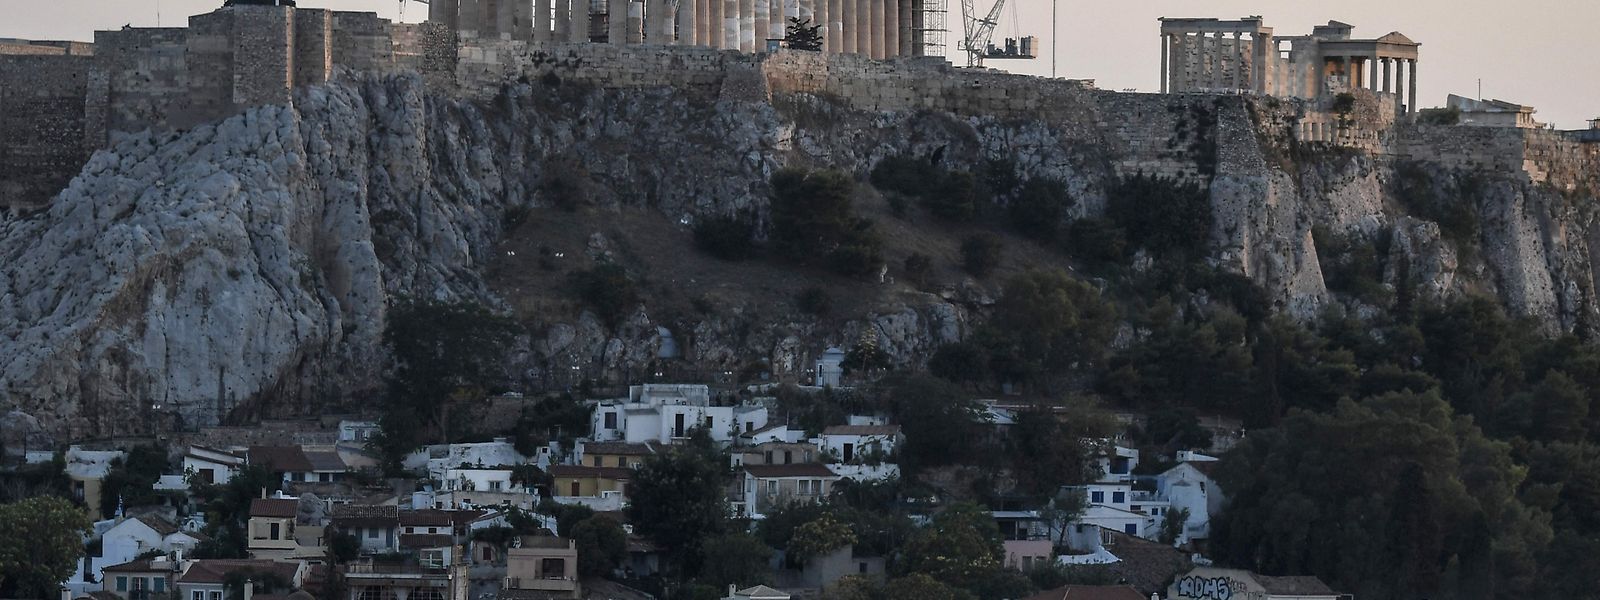 Nach Jahren der Krise scheinen sich die grieschichen Finanzen etwas zu erholen. 